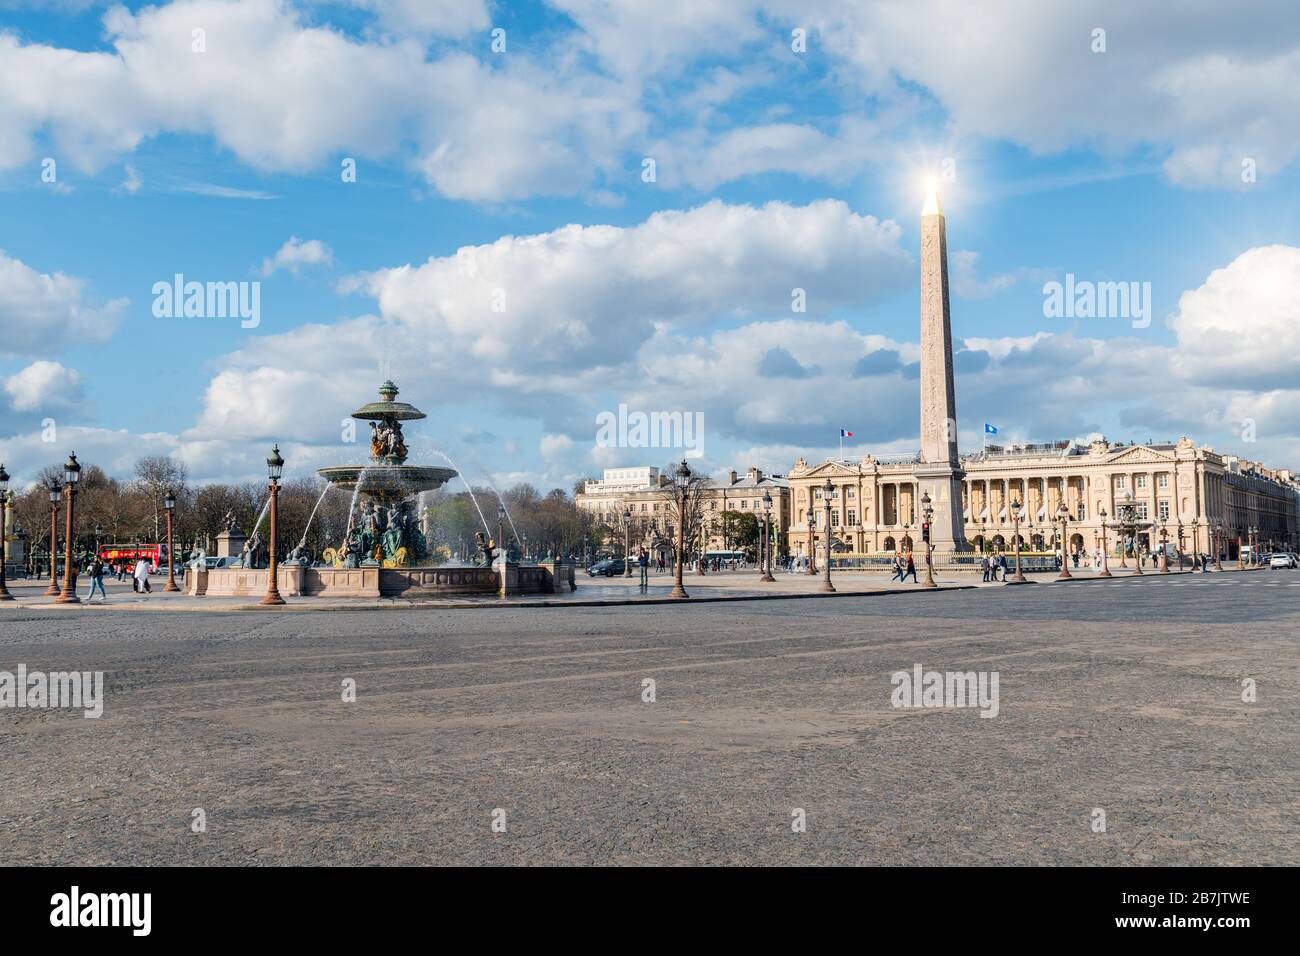 L'obélisque de Louxor et la fontaine maritime de la place de la Concorde - Paris, France Banque D'Images